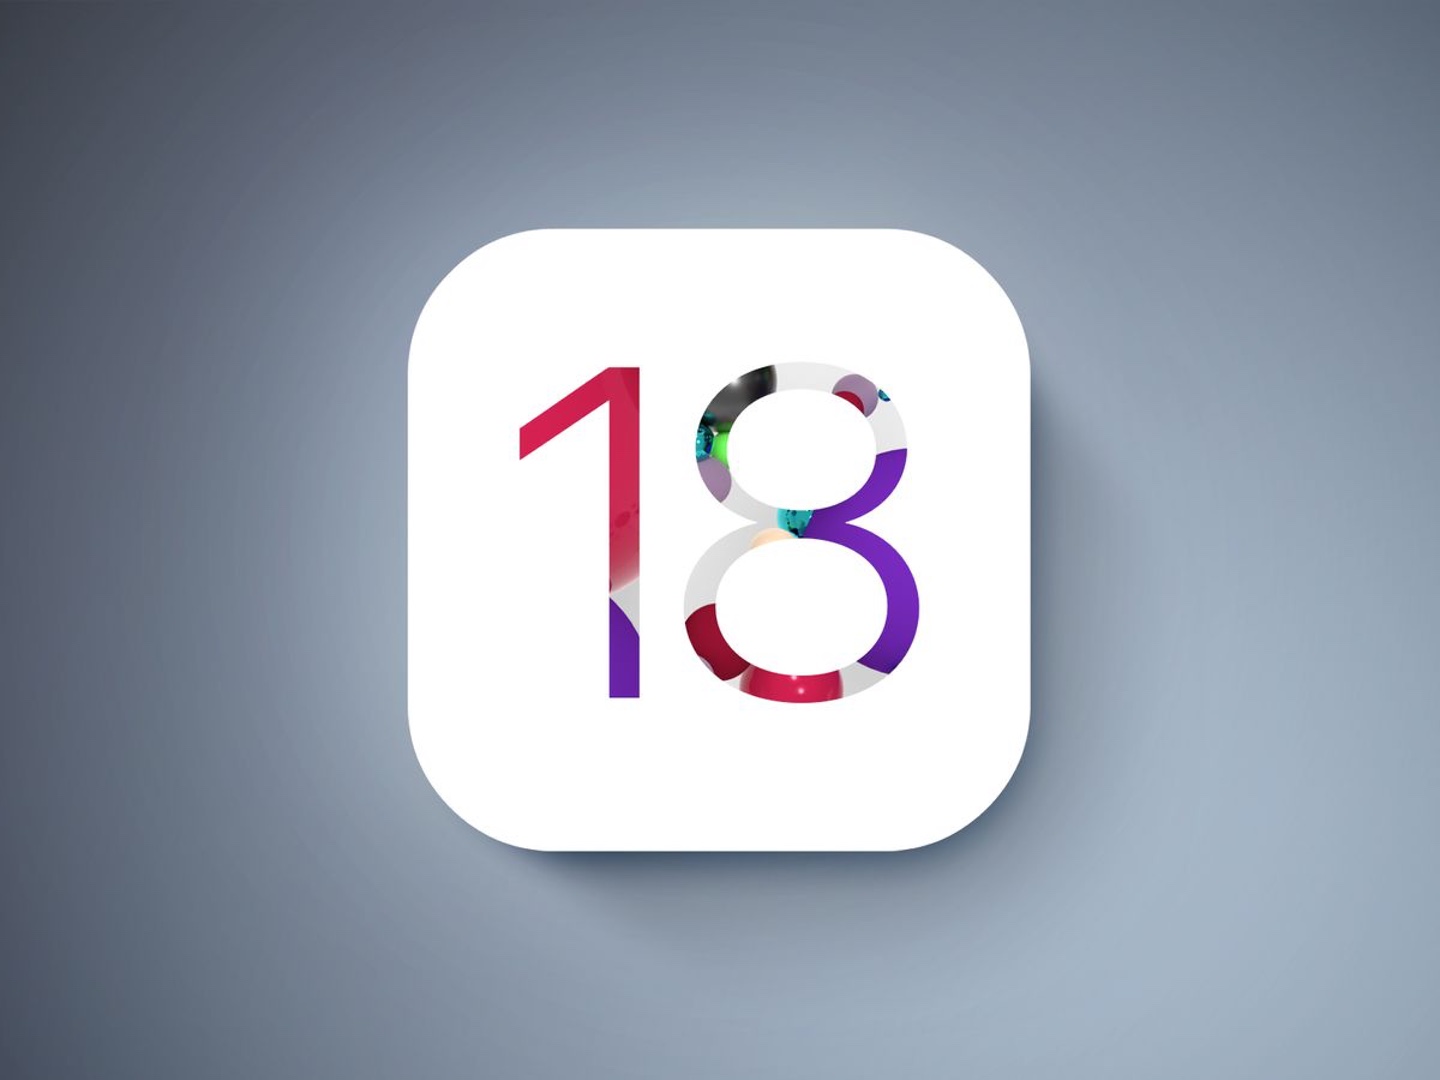 imagen donde se ve el número 18, que es la versión futura de iOS